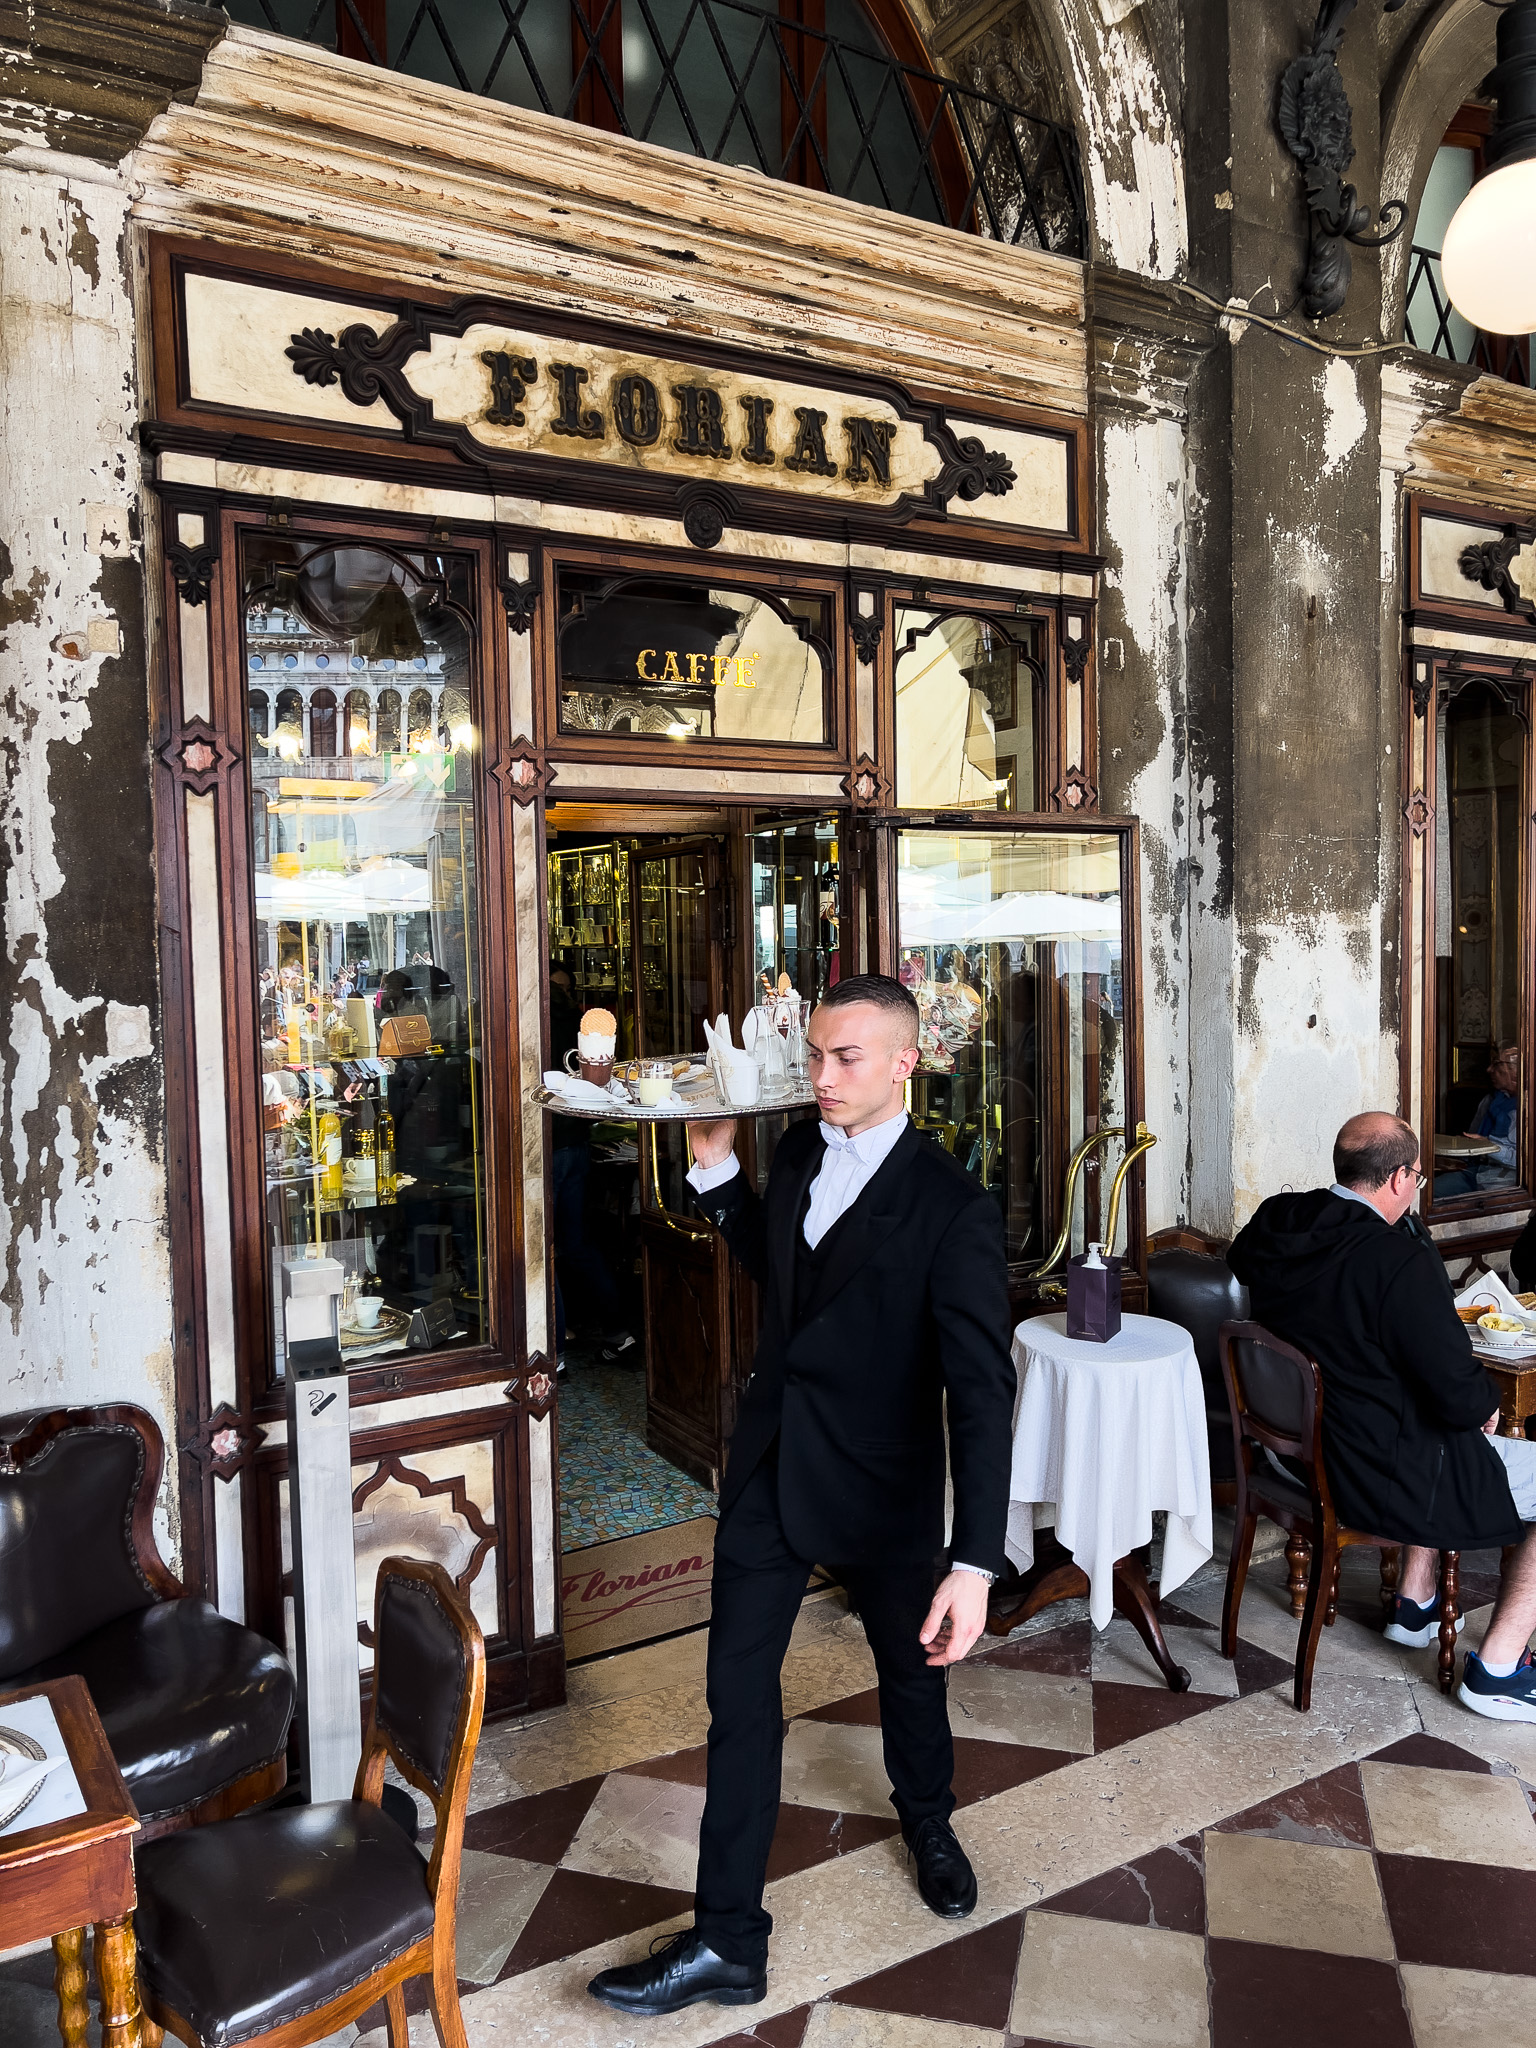 Zdjęcie pokazuje elegancko ubranego kelnera z Caffe Floriant, który niesie tacę z napojami i deserami